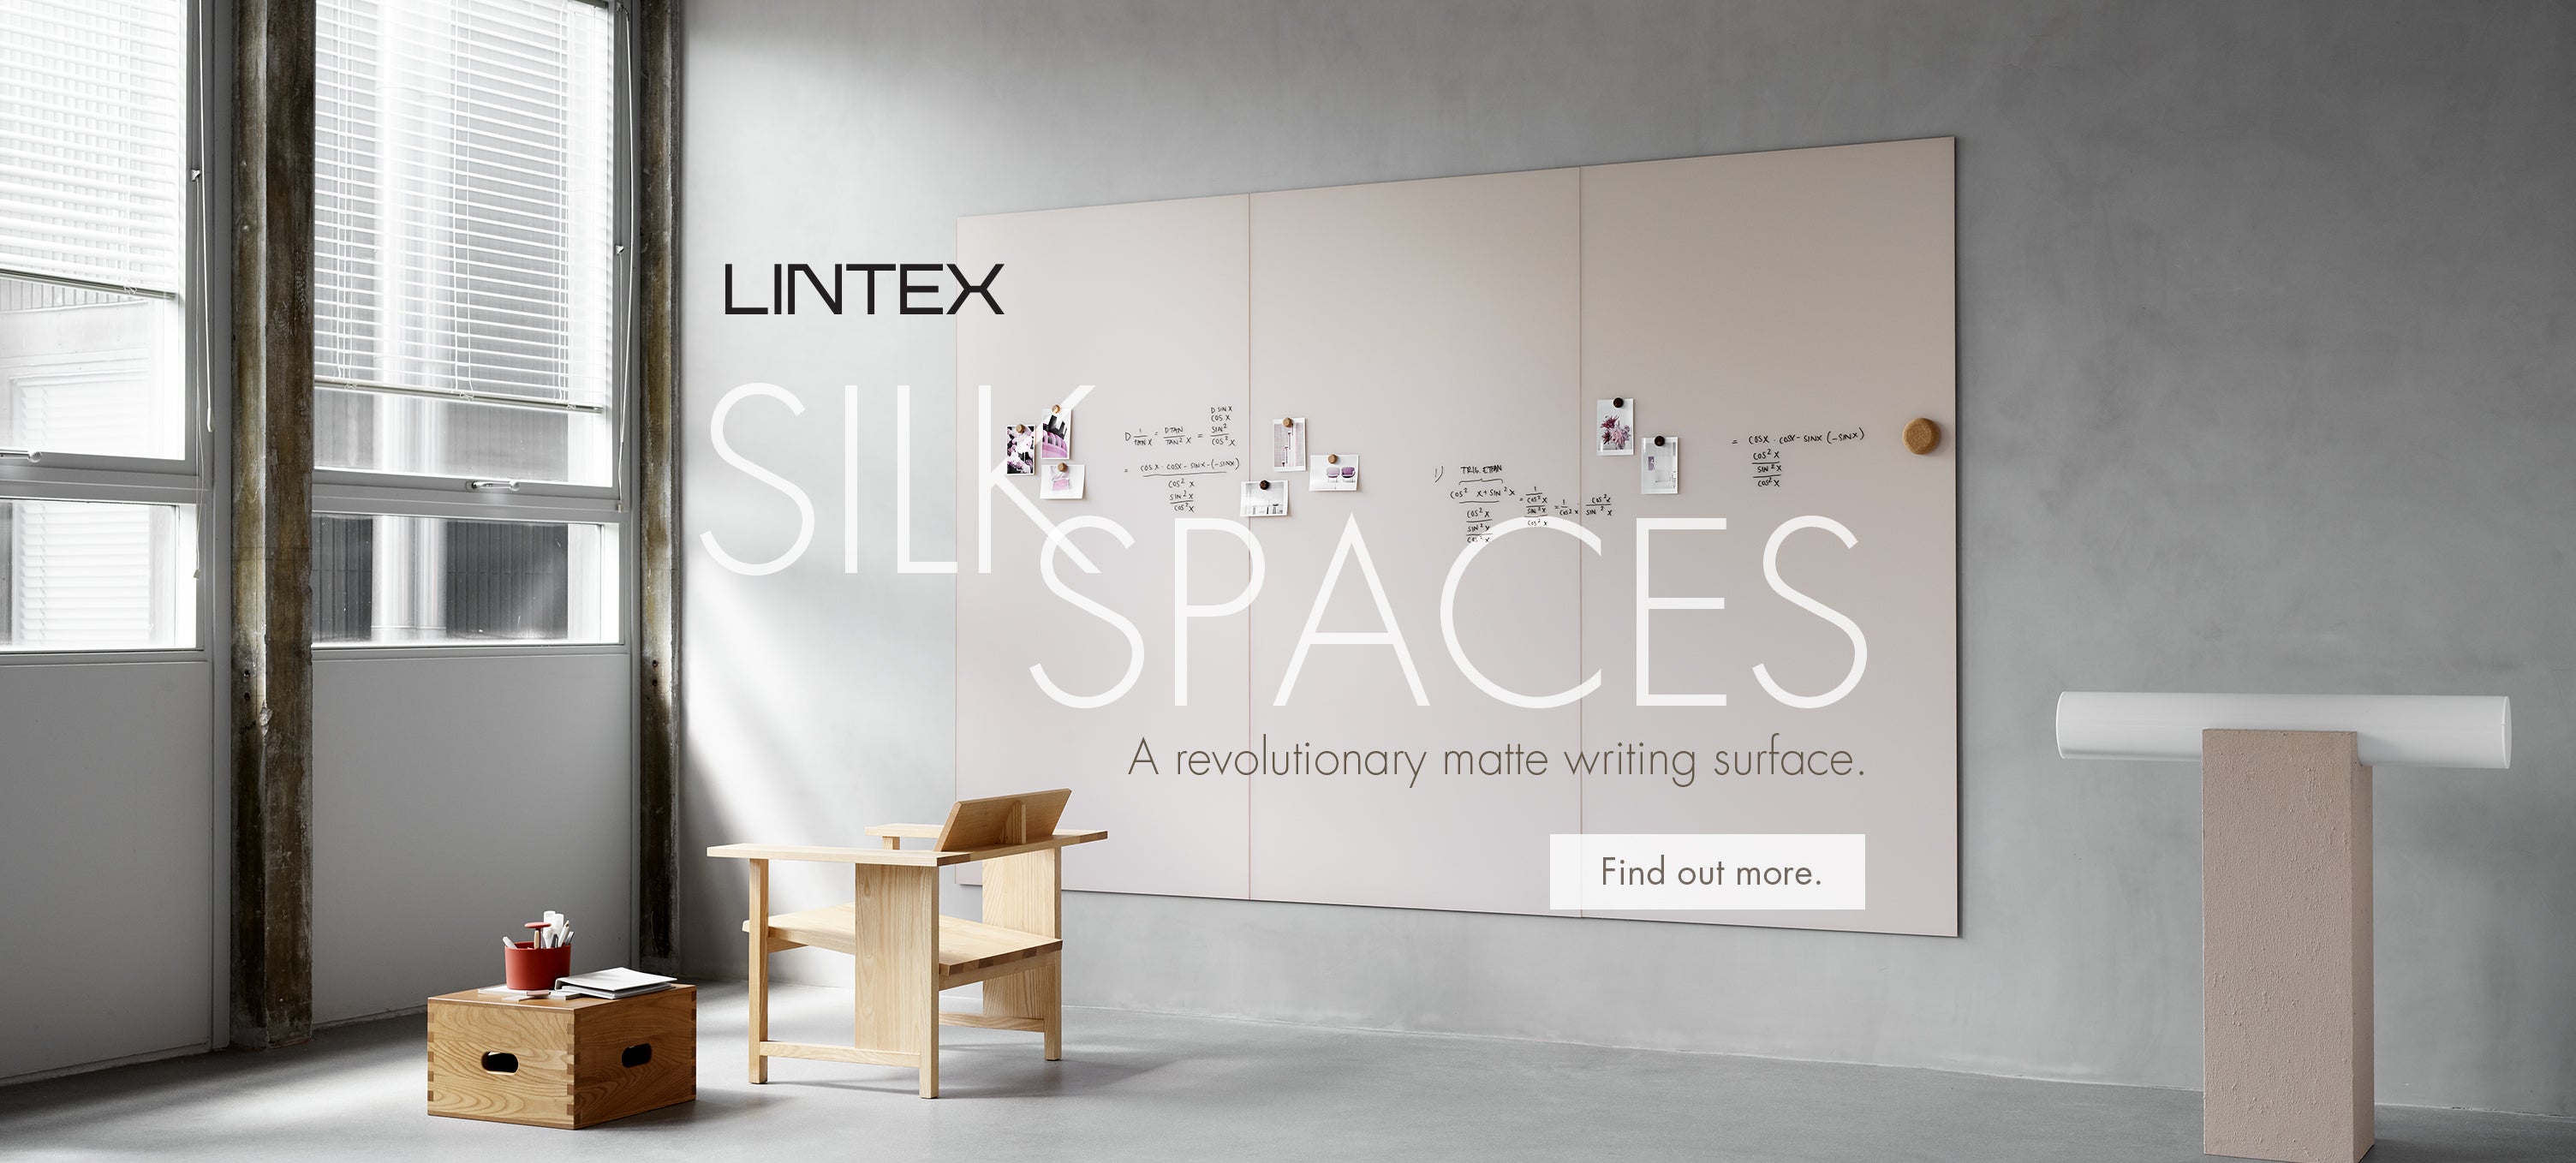 Lintex Silk Spaces white board